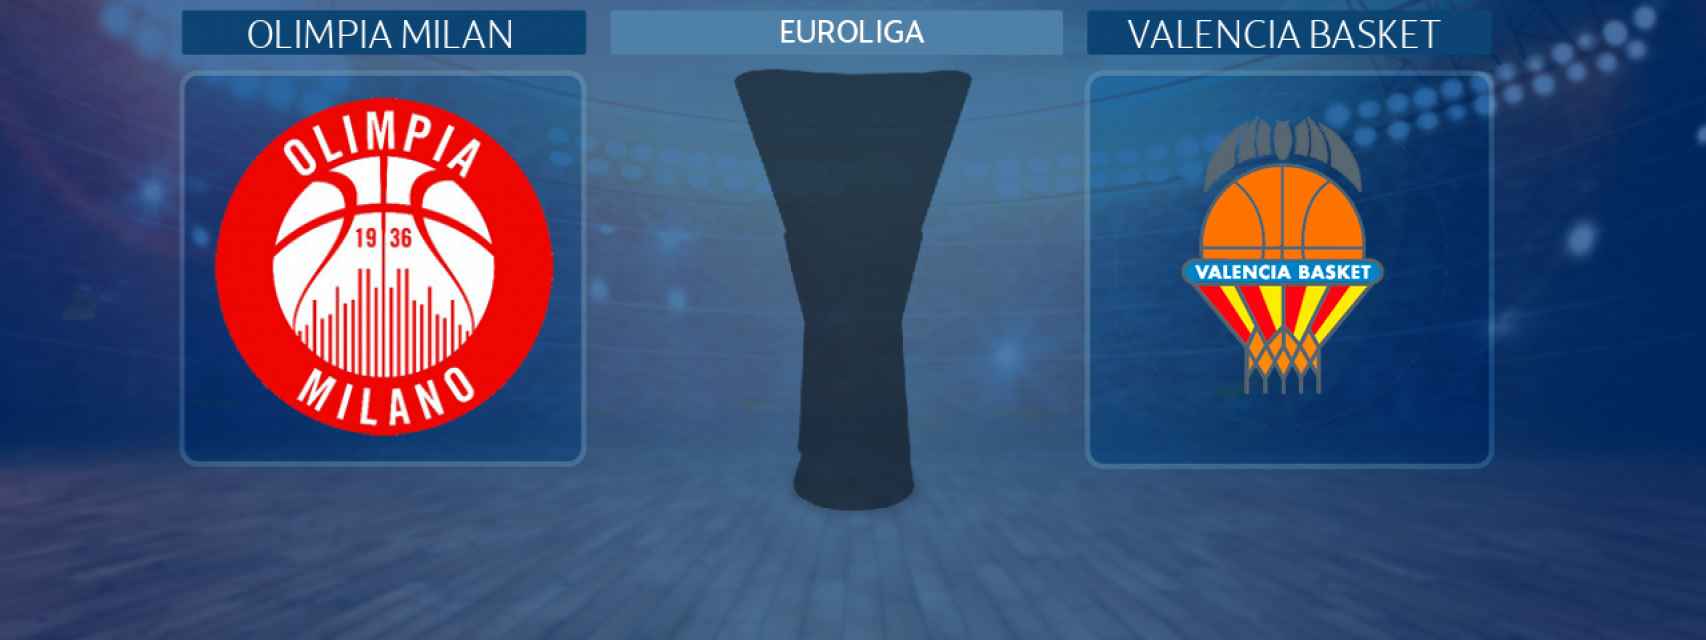 Olimpia Milan - Valencia Basket, partido de la Euroliga